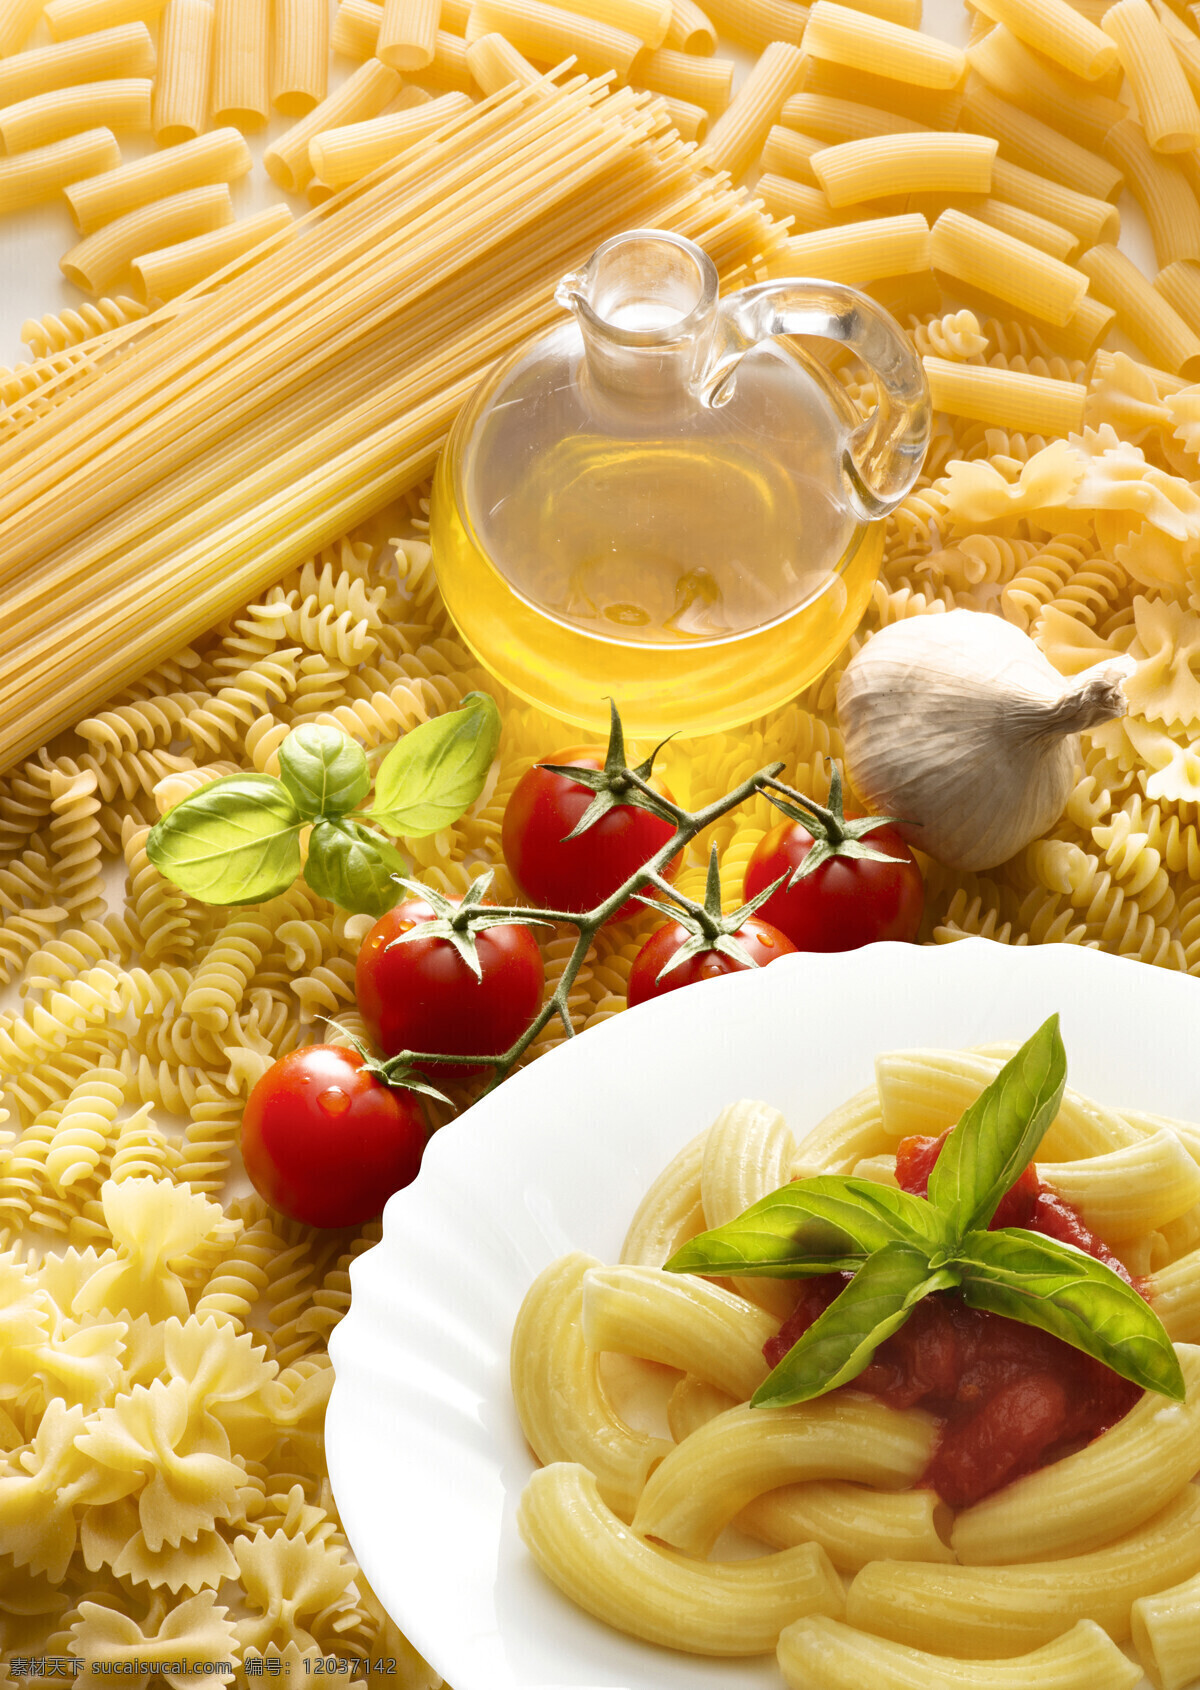 意大利 番茄 色拉油 意大利面 西红柿 食用油 新鲜蔬菜 面条 面食 国外美食 美味 外国美食 餐饮美食 白色